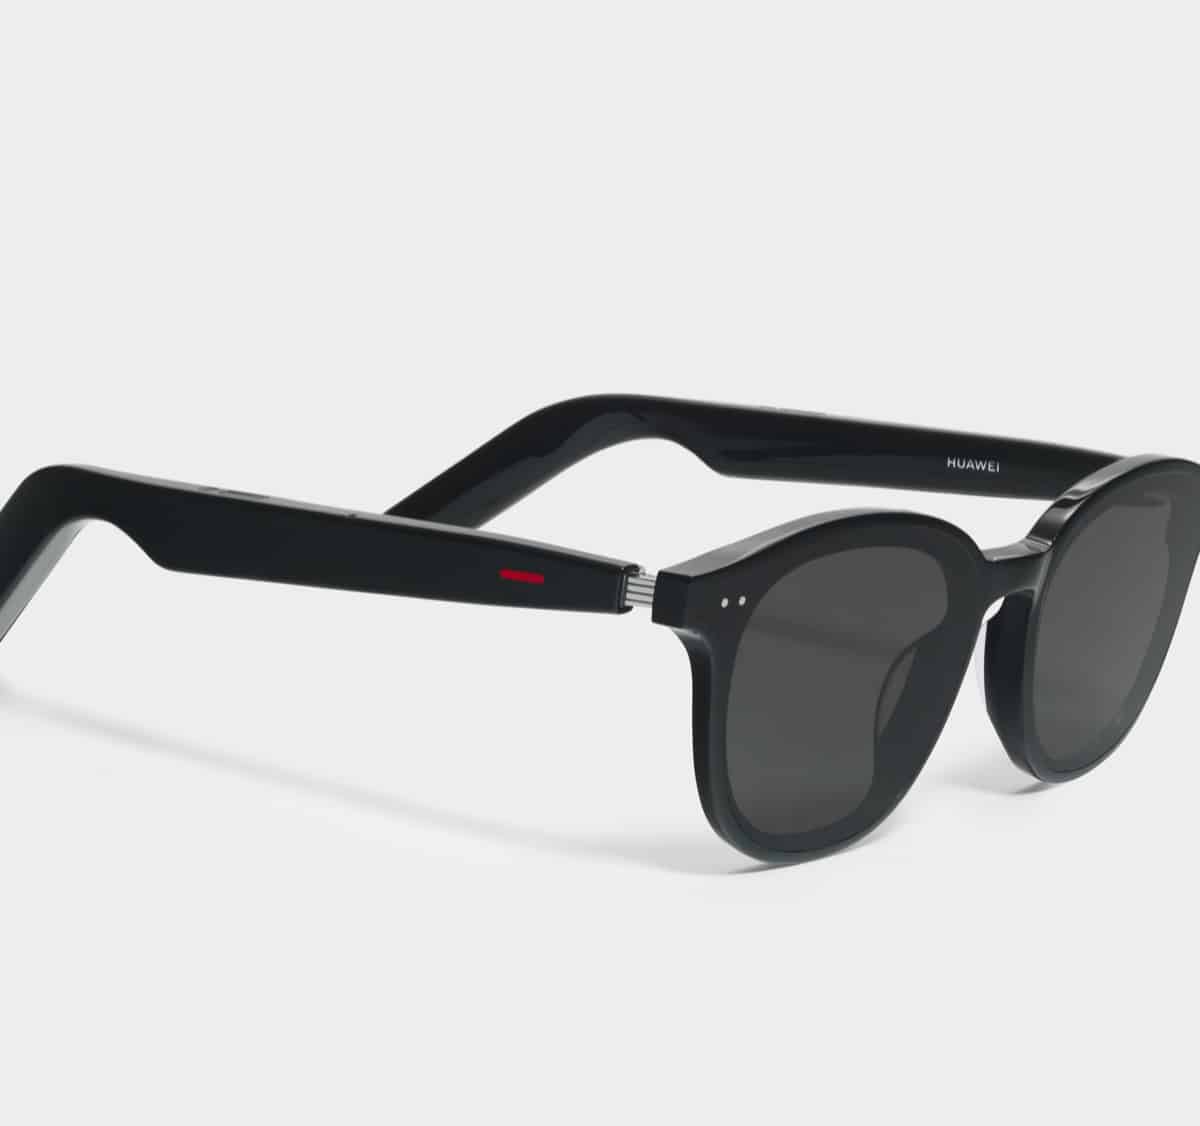 Huawei Gentle Monster Eyewear II akıllı gözlük yeni akıllı işlevlerle geliyor